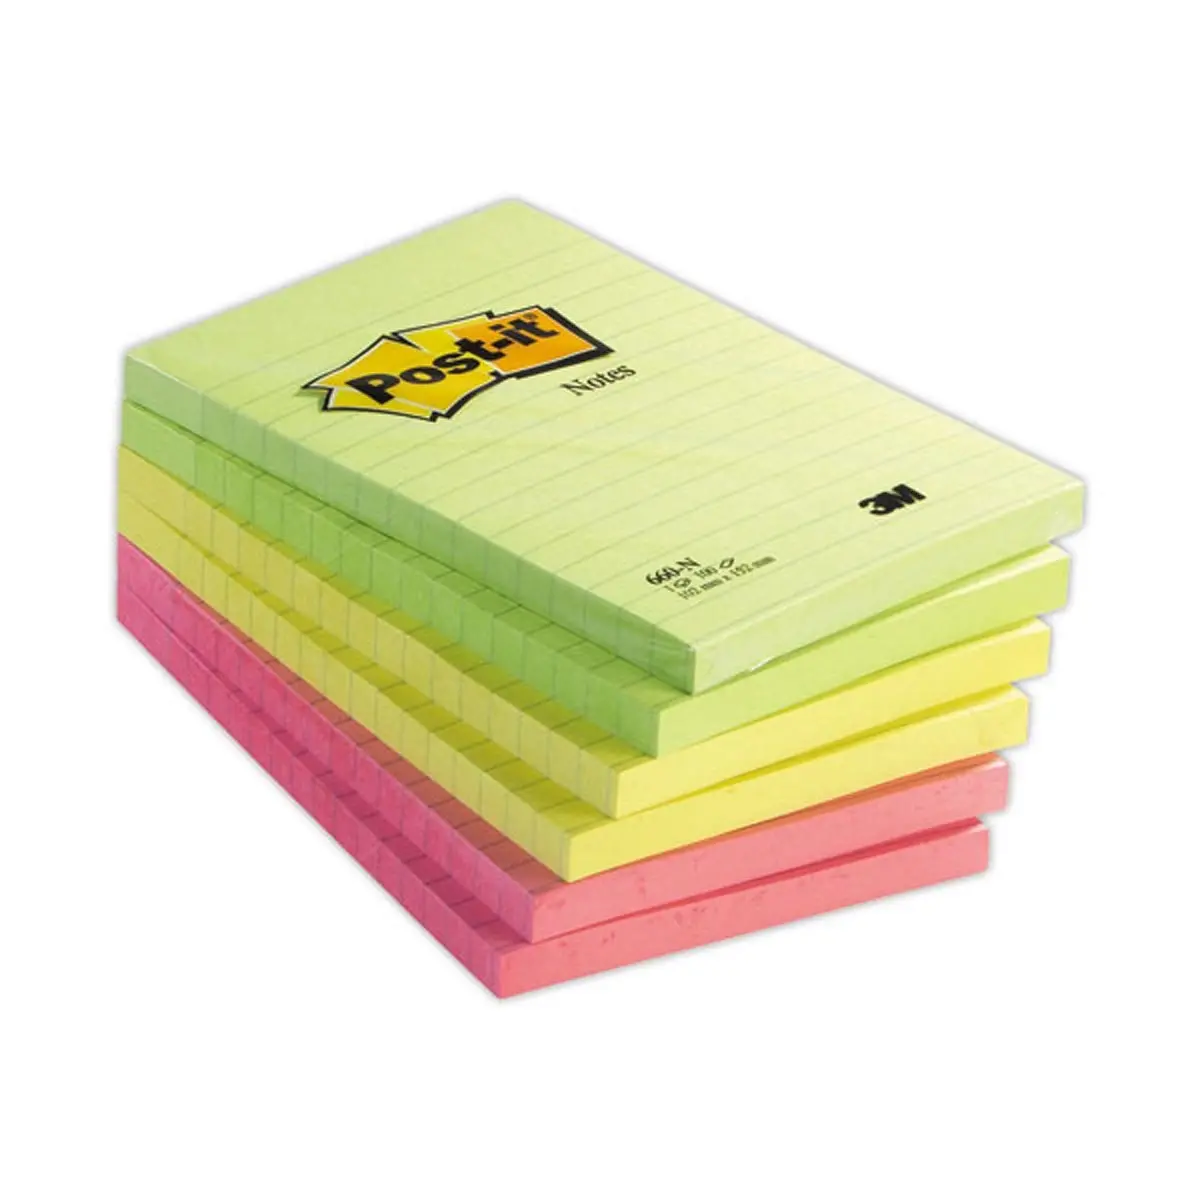 Post-it Z-notes colorés Super Sticky en grand paquet économique